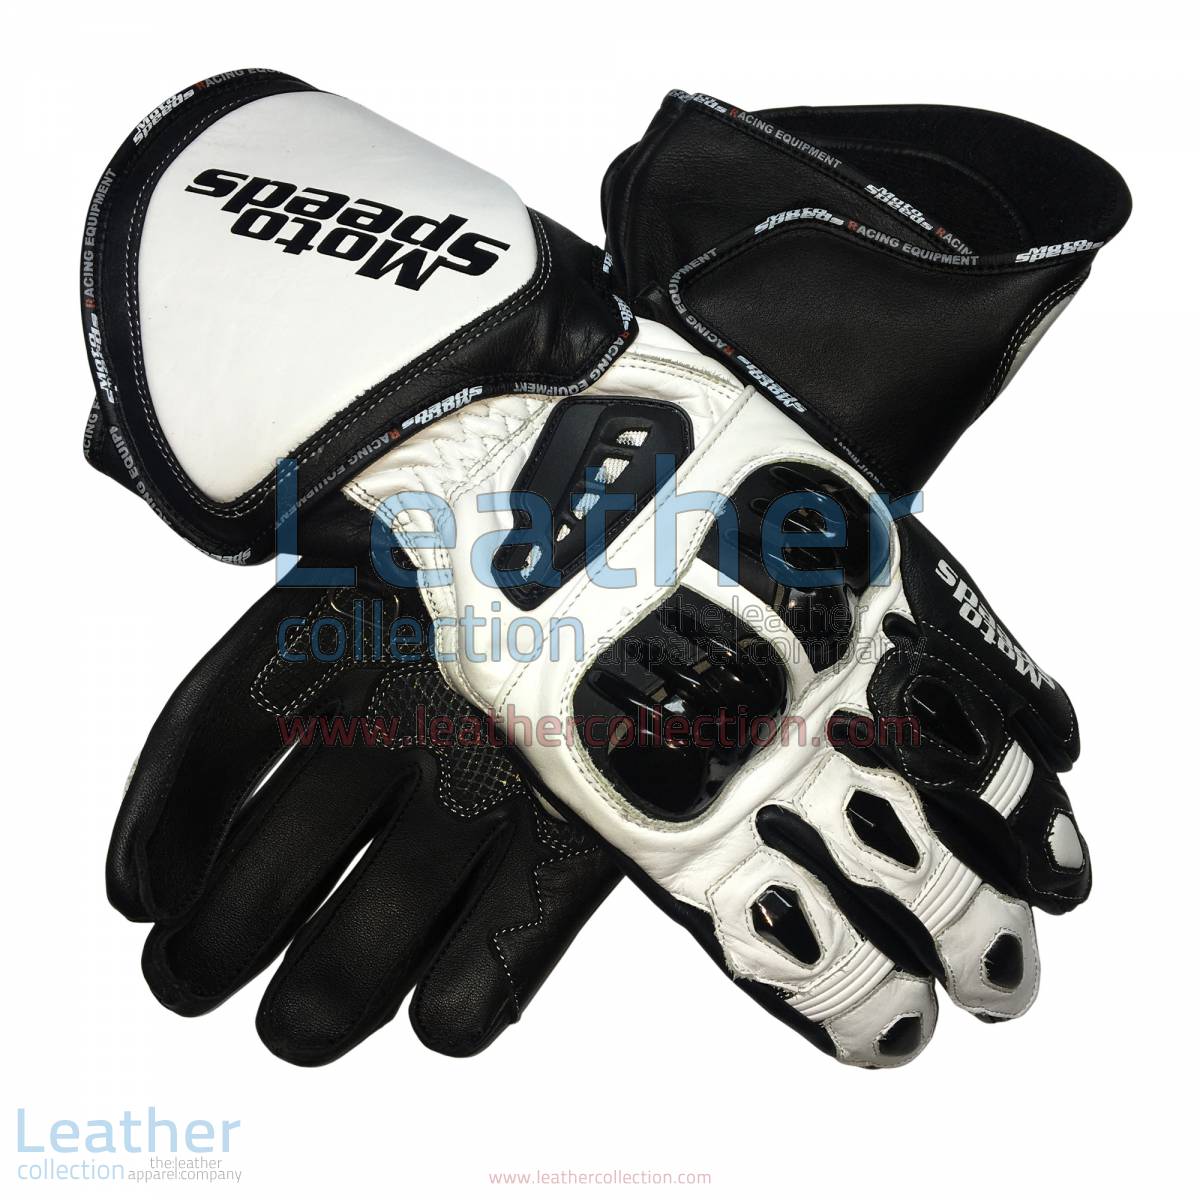 Alex Rins MotoGP 2017 Leather Gloves | Alex Rins,Alex Rins MotoGP 2017 Leather Gloves